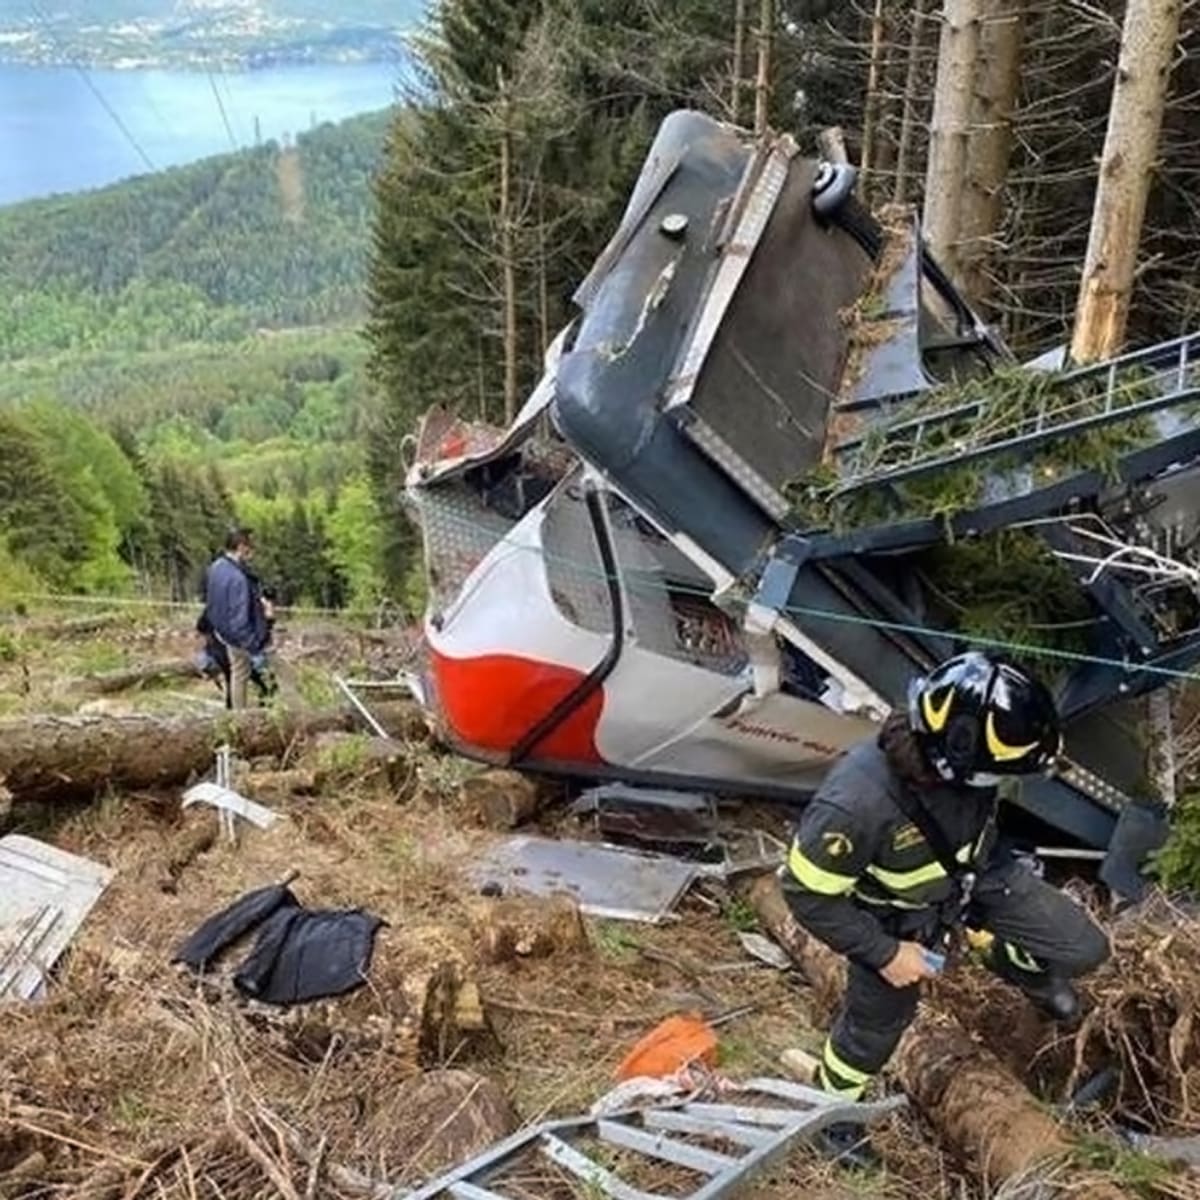 Pád kabiny lanovky v italském horském středisku Stresa Mottarone si na konci května vyžádal čtrnáct životů.